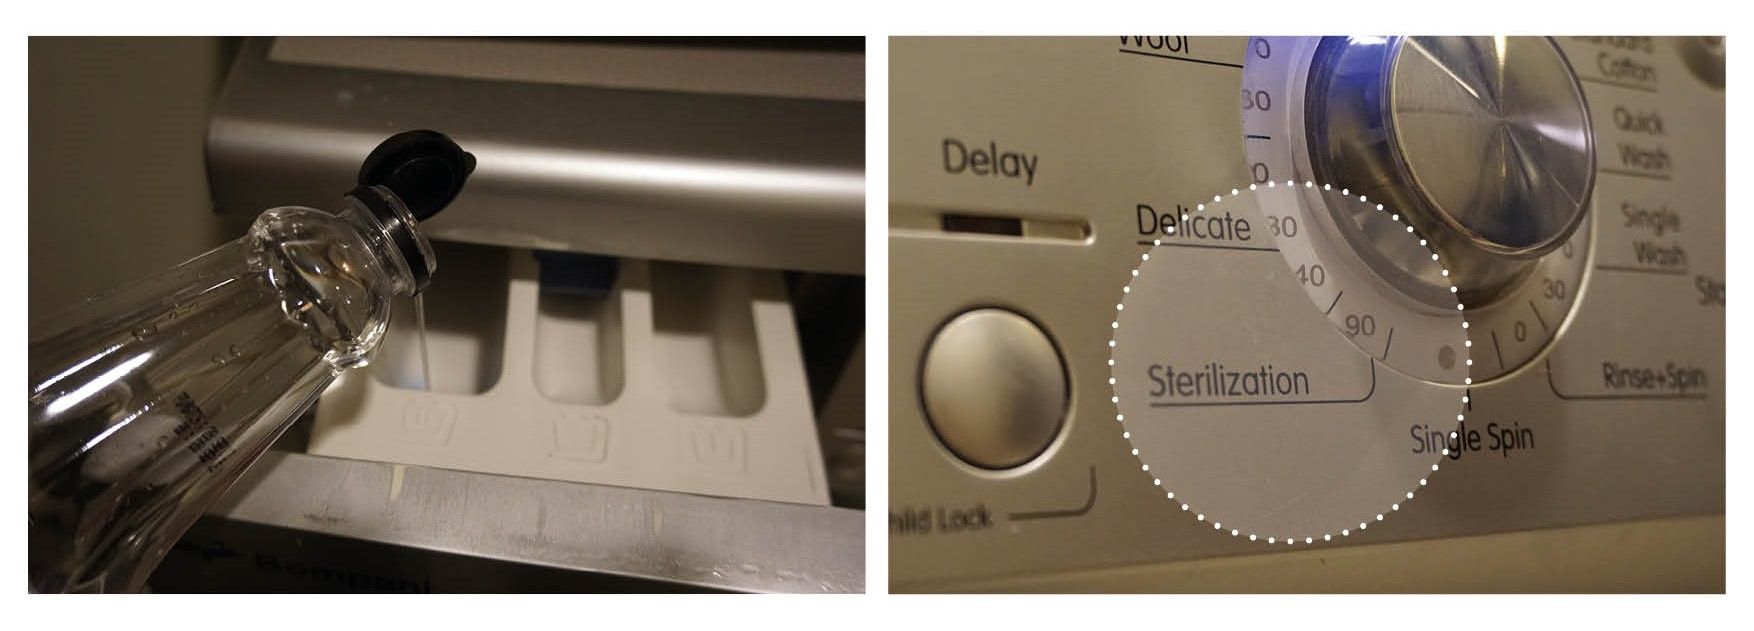 Bildet viser at man kan rense vaskemaskin med eddik og 90-graders program, rens vaskemaskin